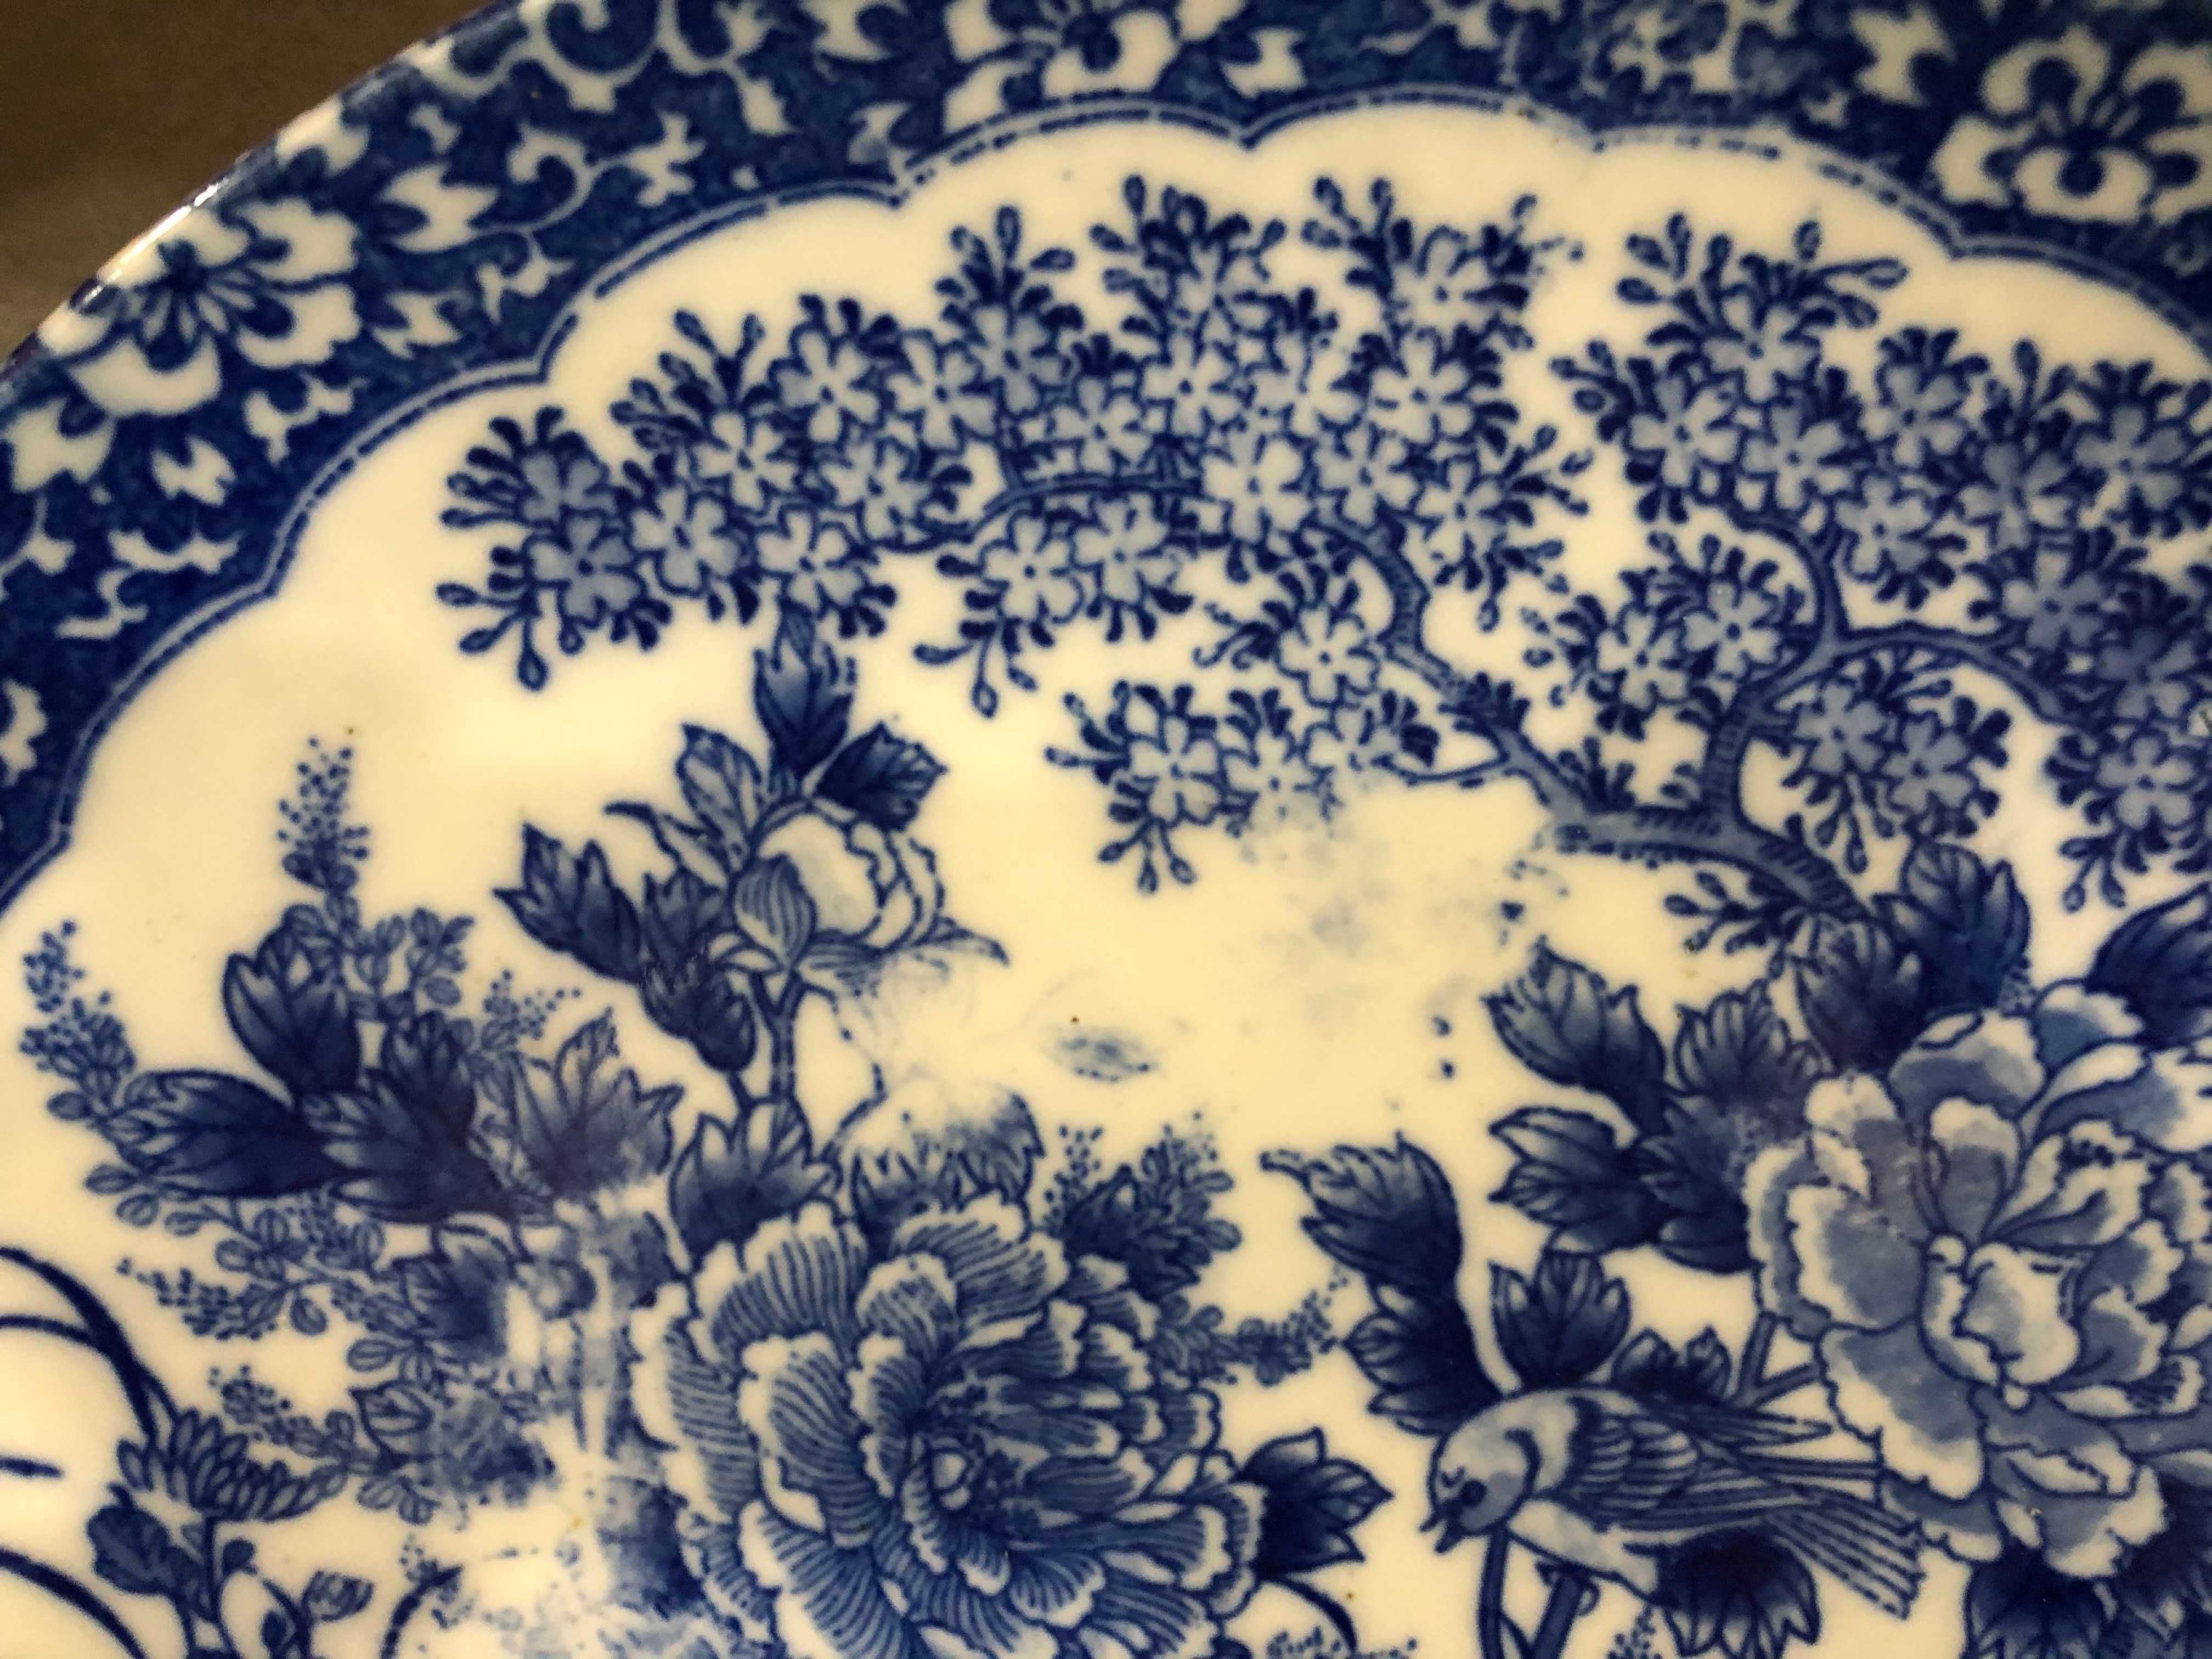 Prato em porcelana chinesa